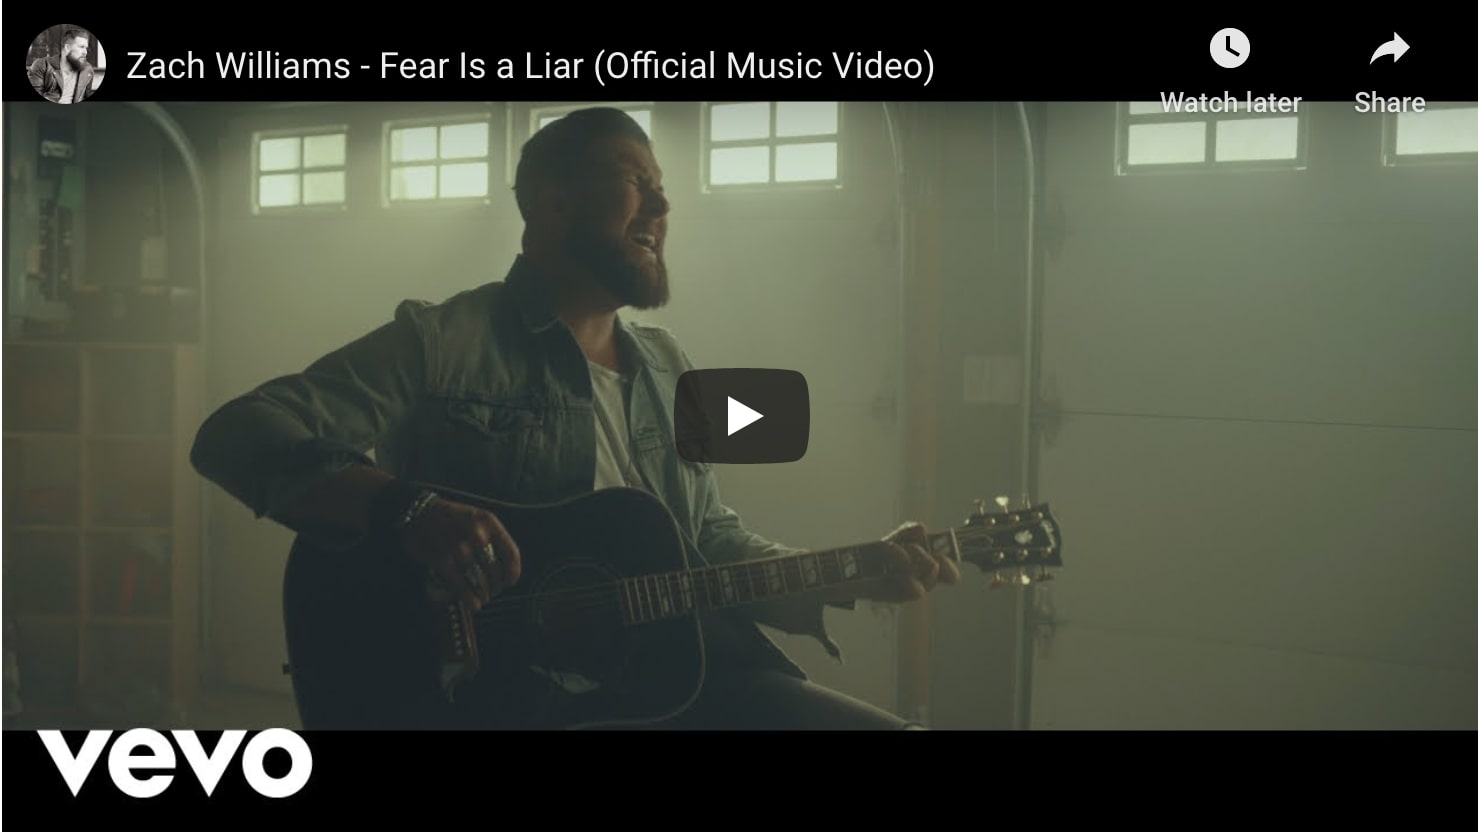 zach williams - fear is a liar music video